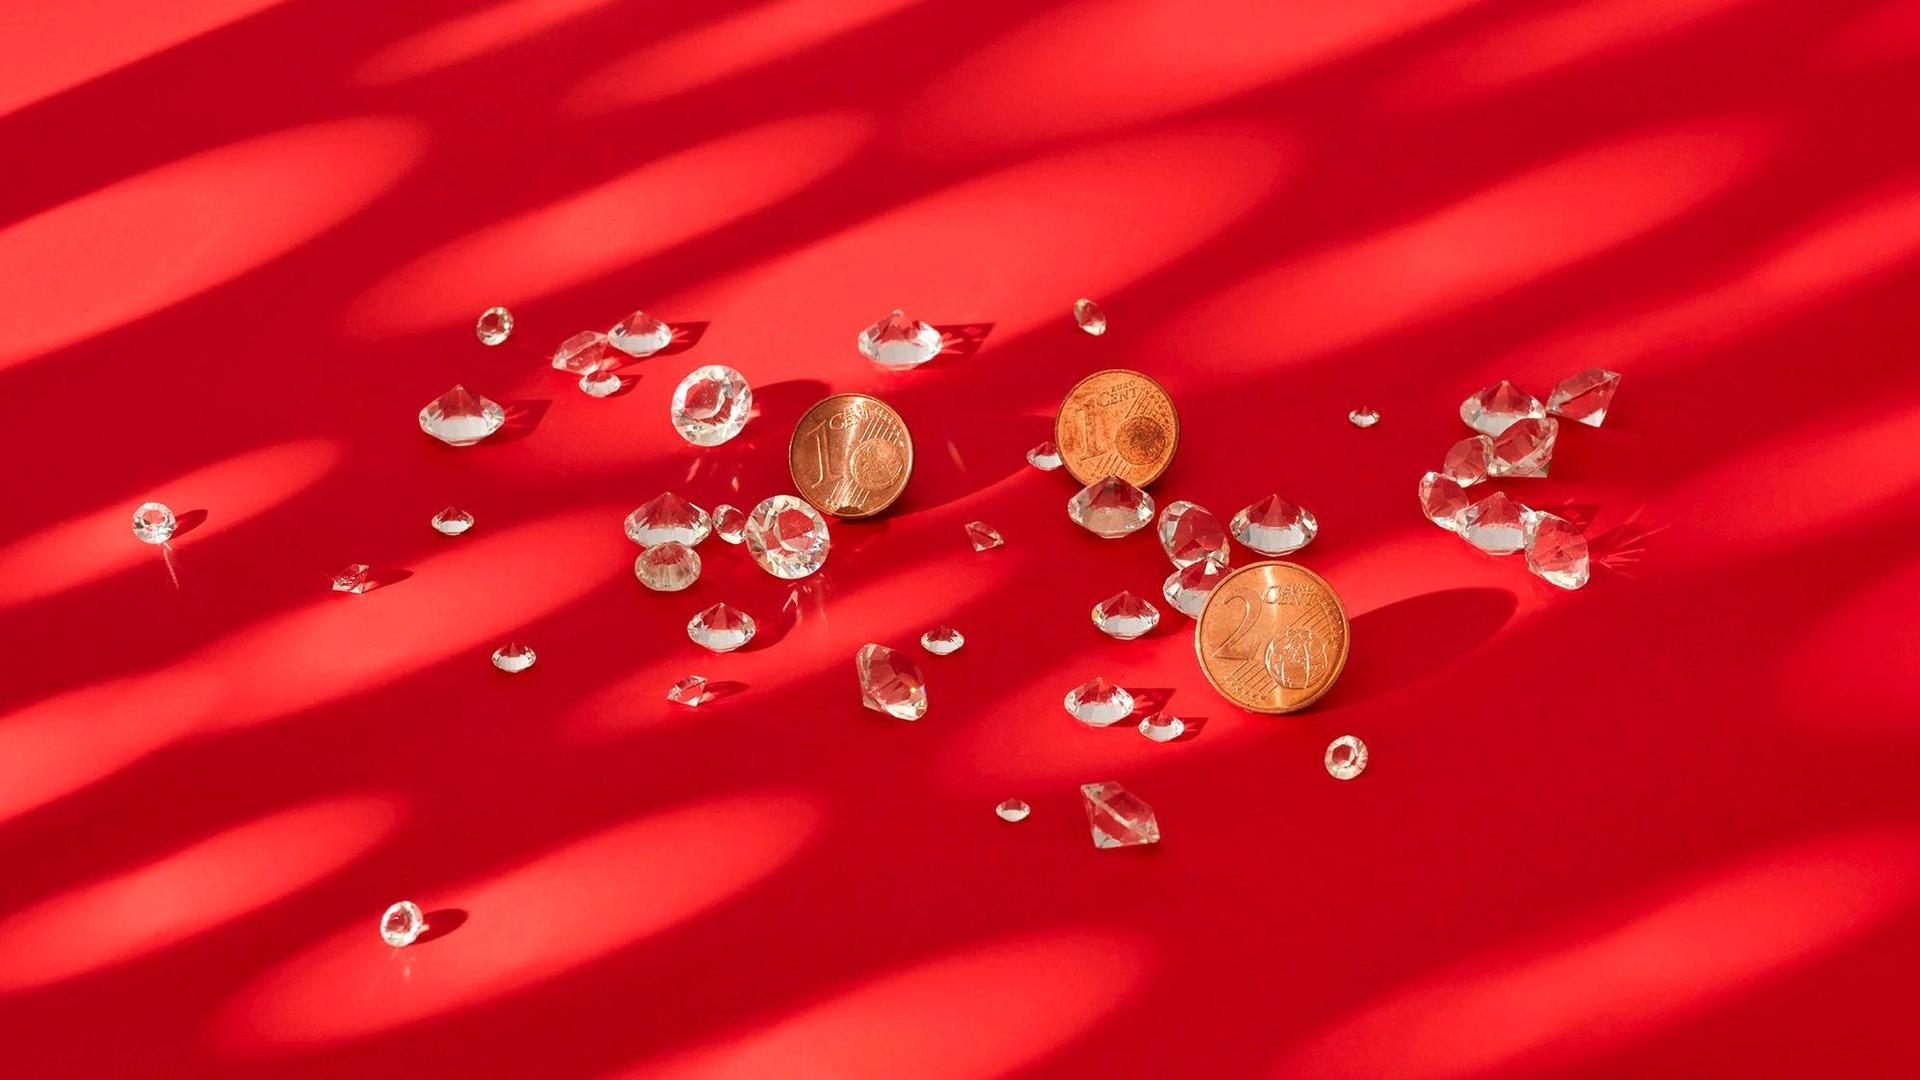 Diamanten und Kupfegeld liegen auf einem roten Untergrund. Sie werden von einem Muster aus runden Lichtflecken beleuchtet.